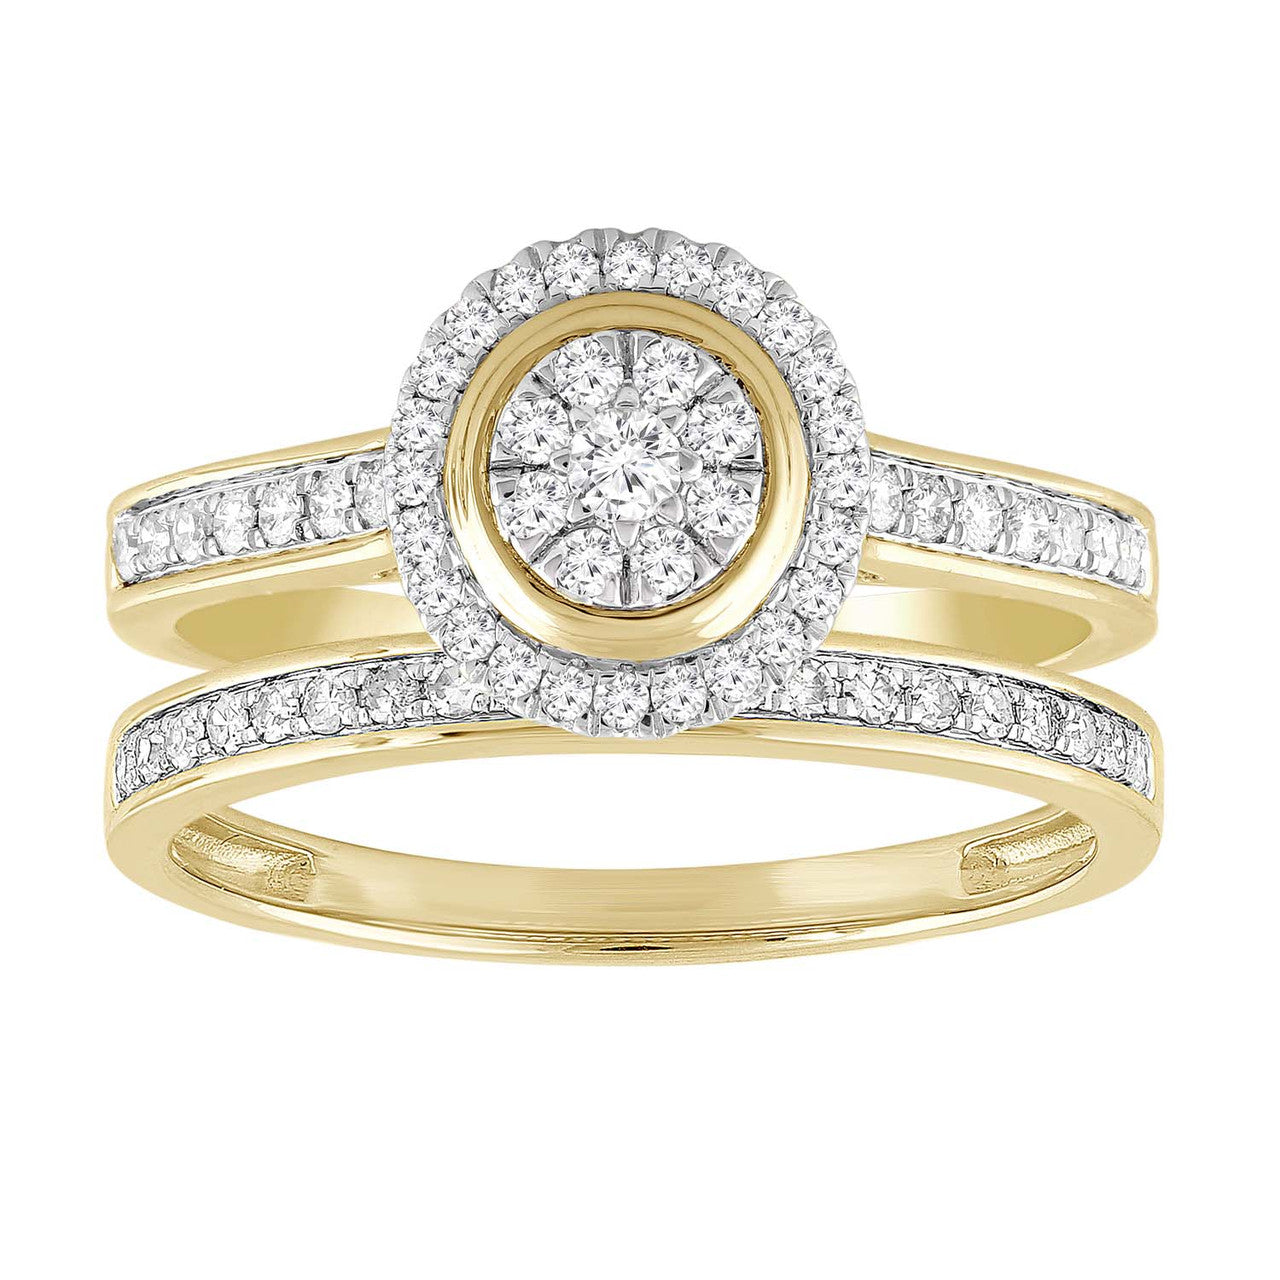 Ice Jewellery Ring Set with 0.50ct Diamond in 9K Yellow Gold -  IGR-36899-050-Y | Ice Jewellery Australia